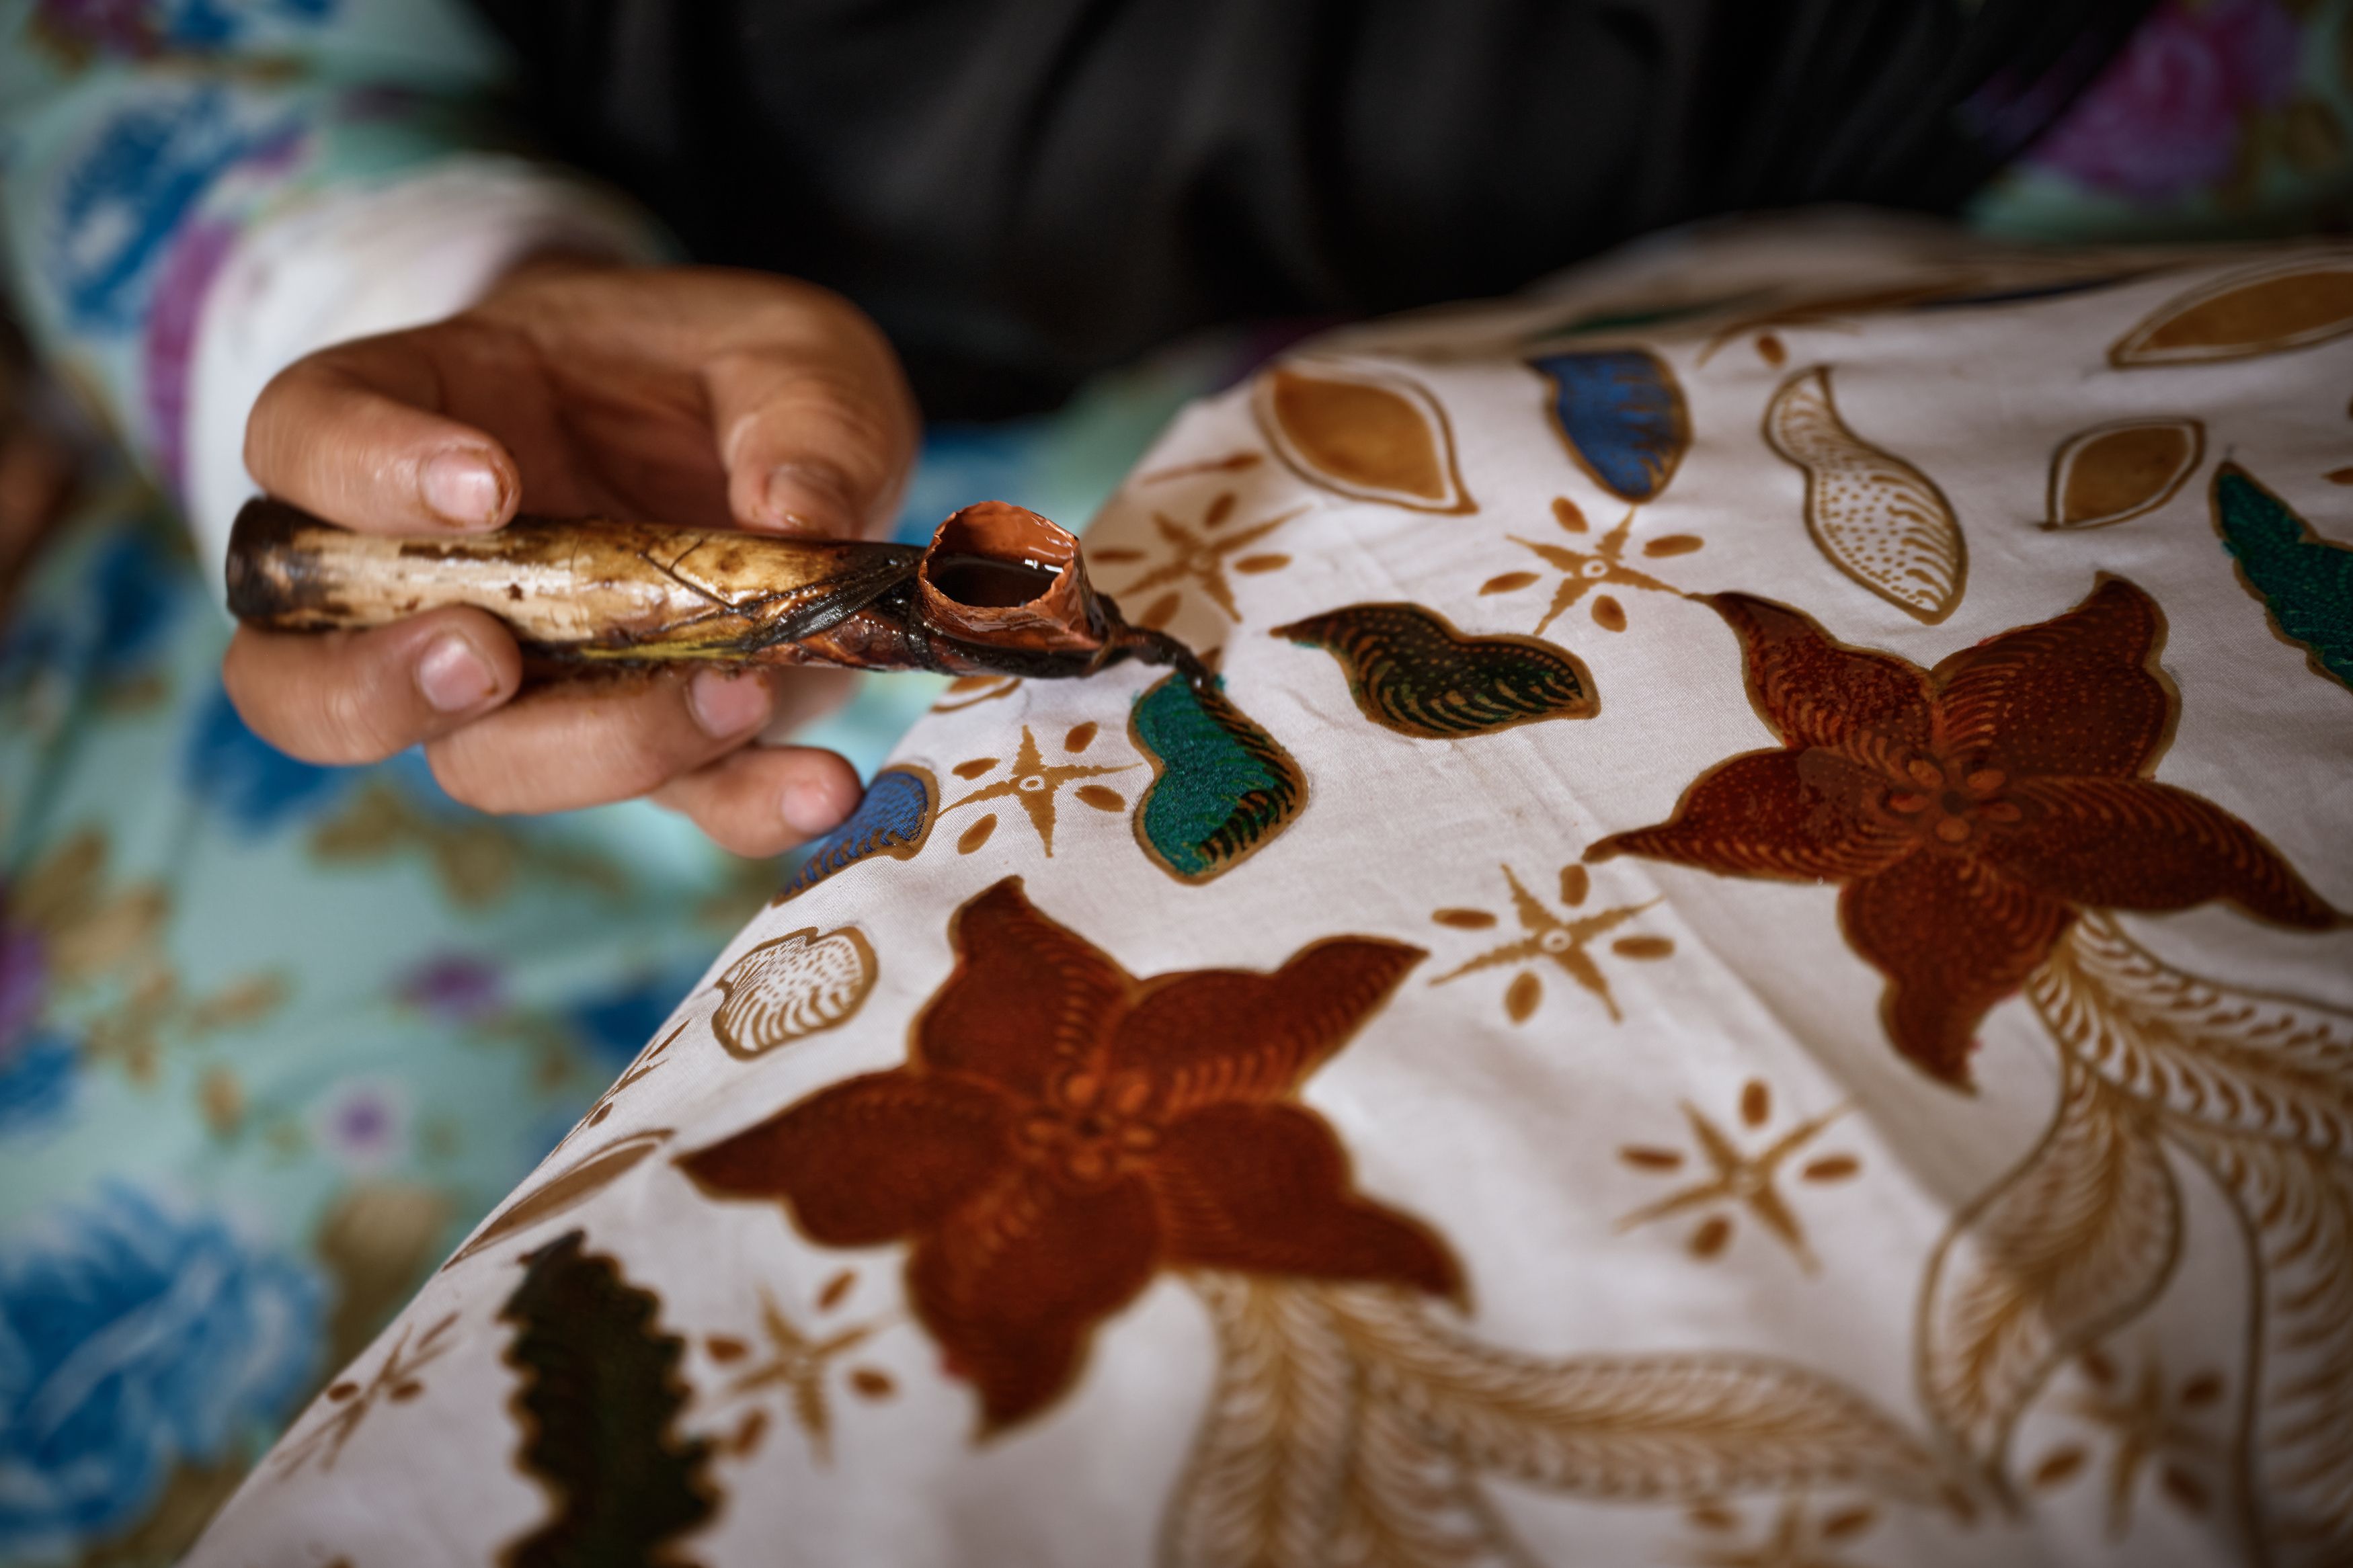 منظر عن قرب ليد ترسم تصميم باتيك إندونيسي تقليدي على القماش.